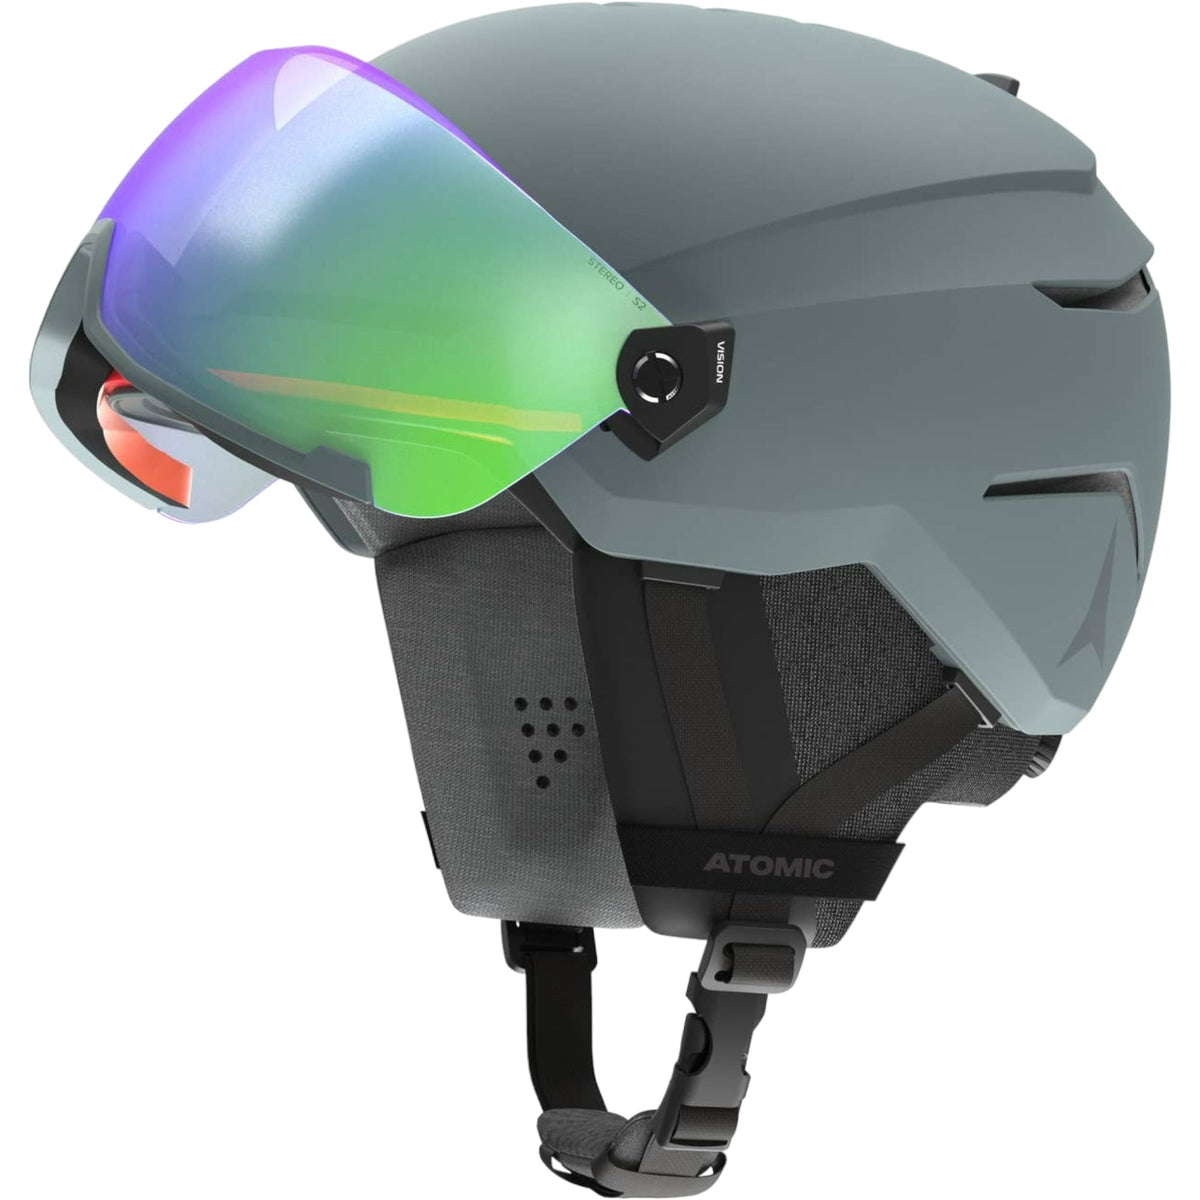 Savor Visor Stereo Adult Ski Helmet